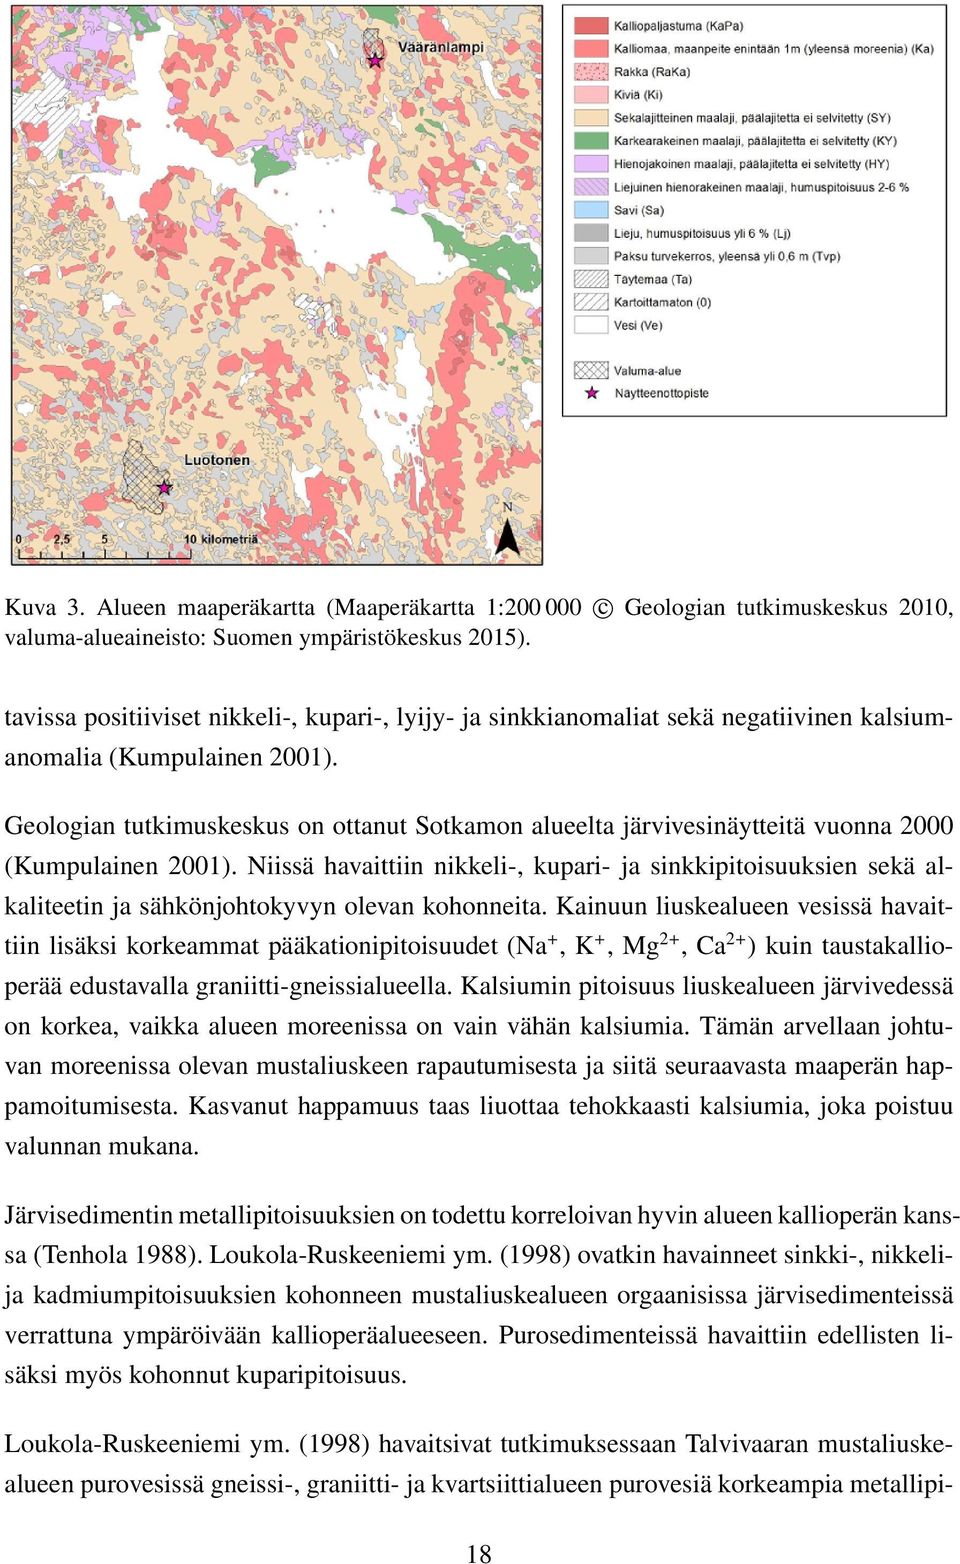 Geologian tutkimuskeskus on ottanut Sotkamon alueelta järvivesinäytteitä vuonna 2000 (Kumpulainen 2001).